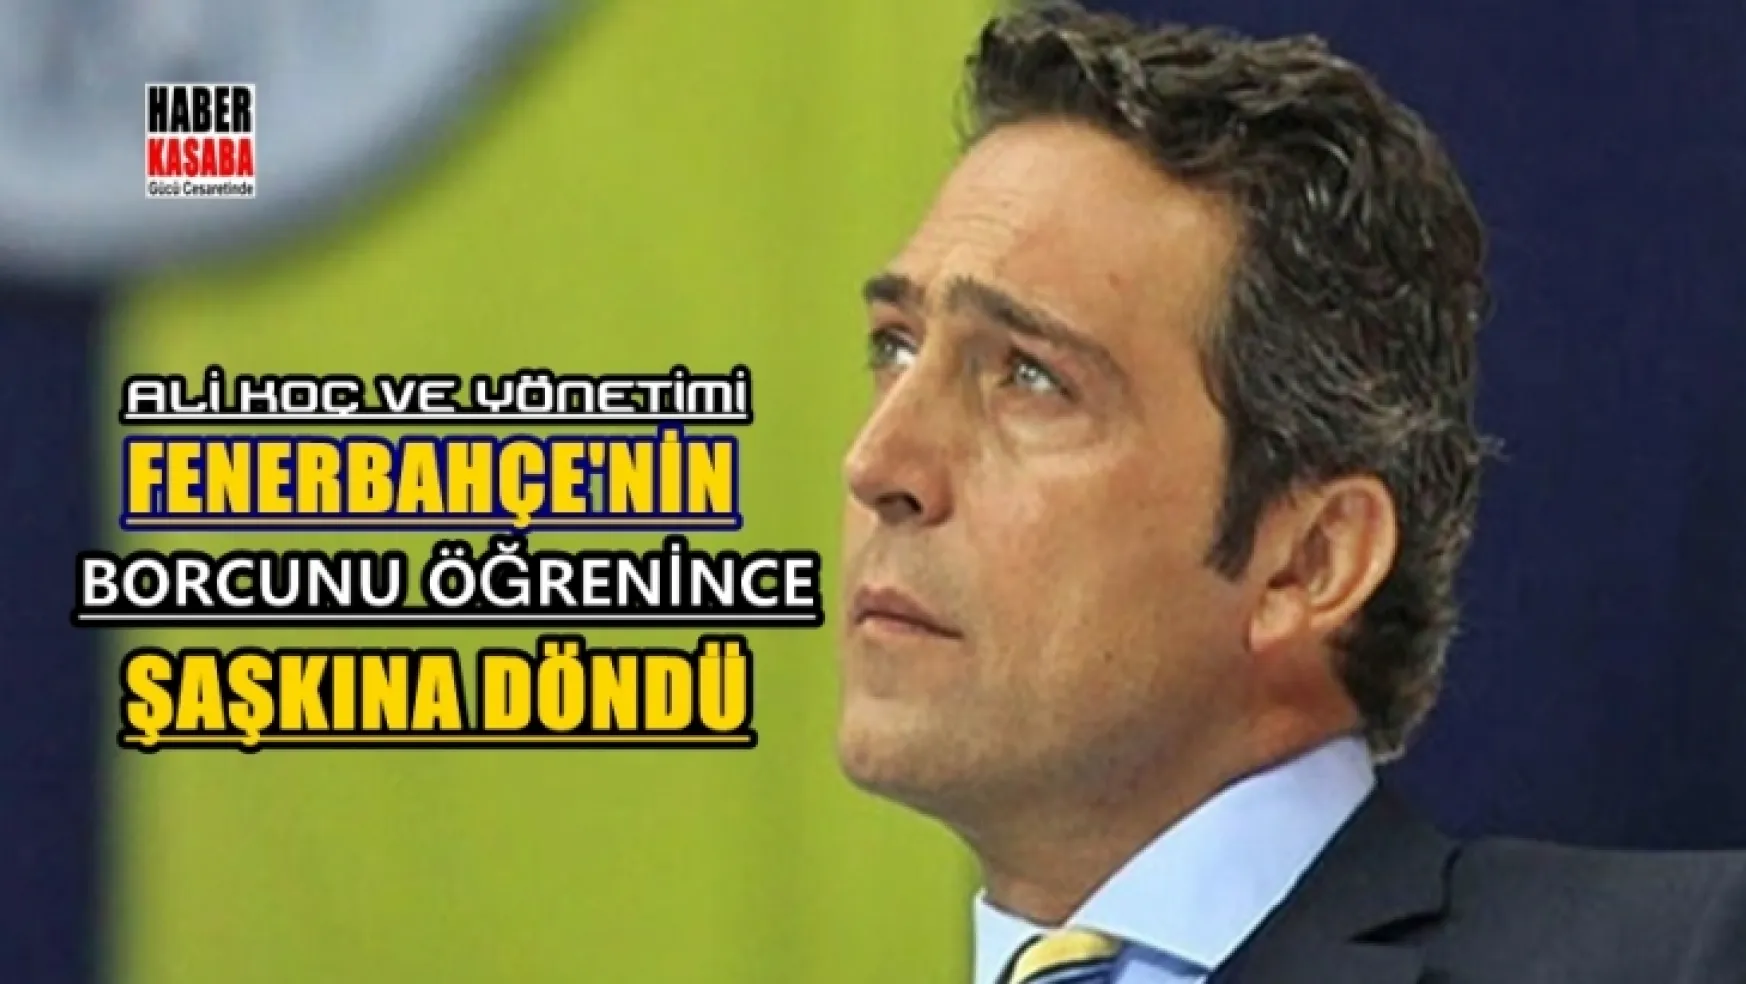 Fenerbahçe'nin borcunu öğrenince şaşkına döndüler!